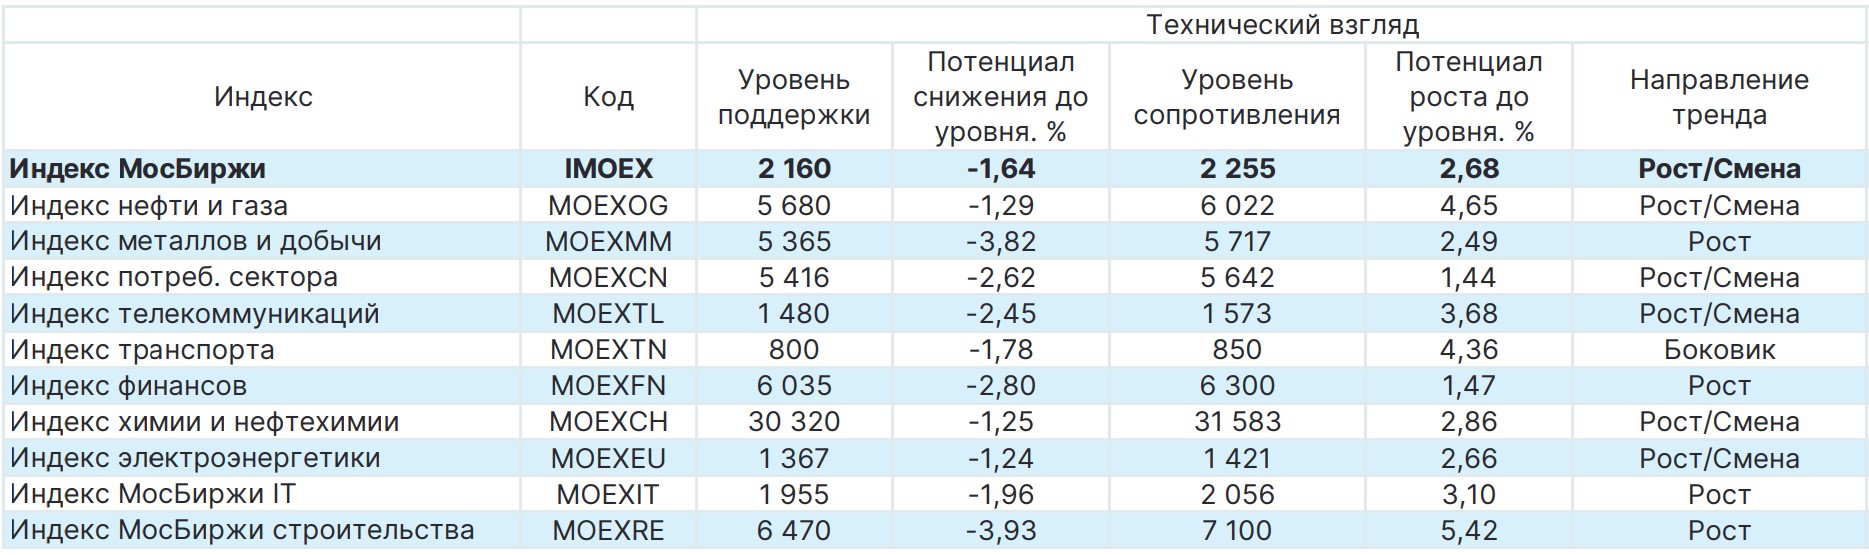 Российские акции по отраслям: обзор и прогноз на семь дней